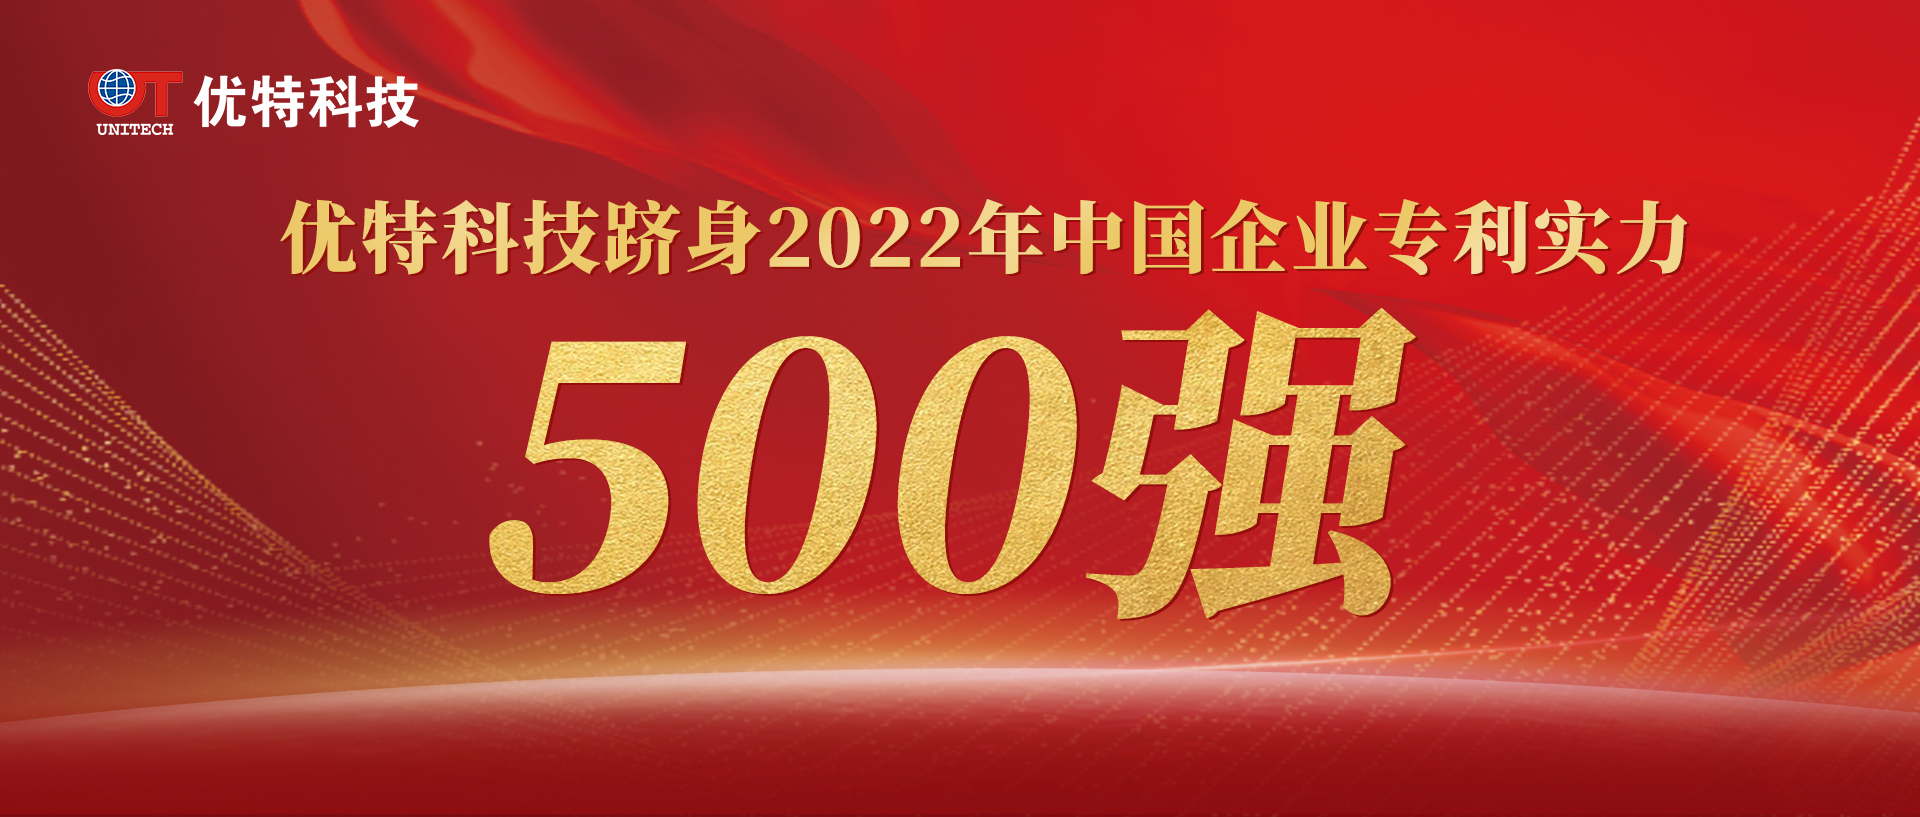 优特科技上榜“中国企业专利实力500强”